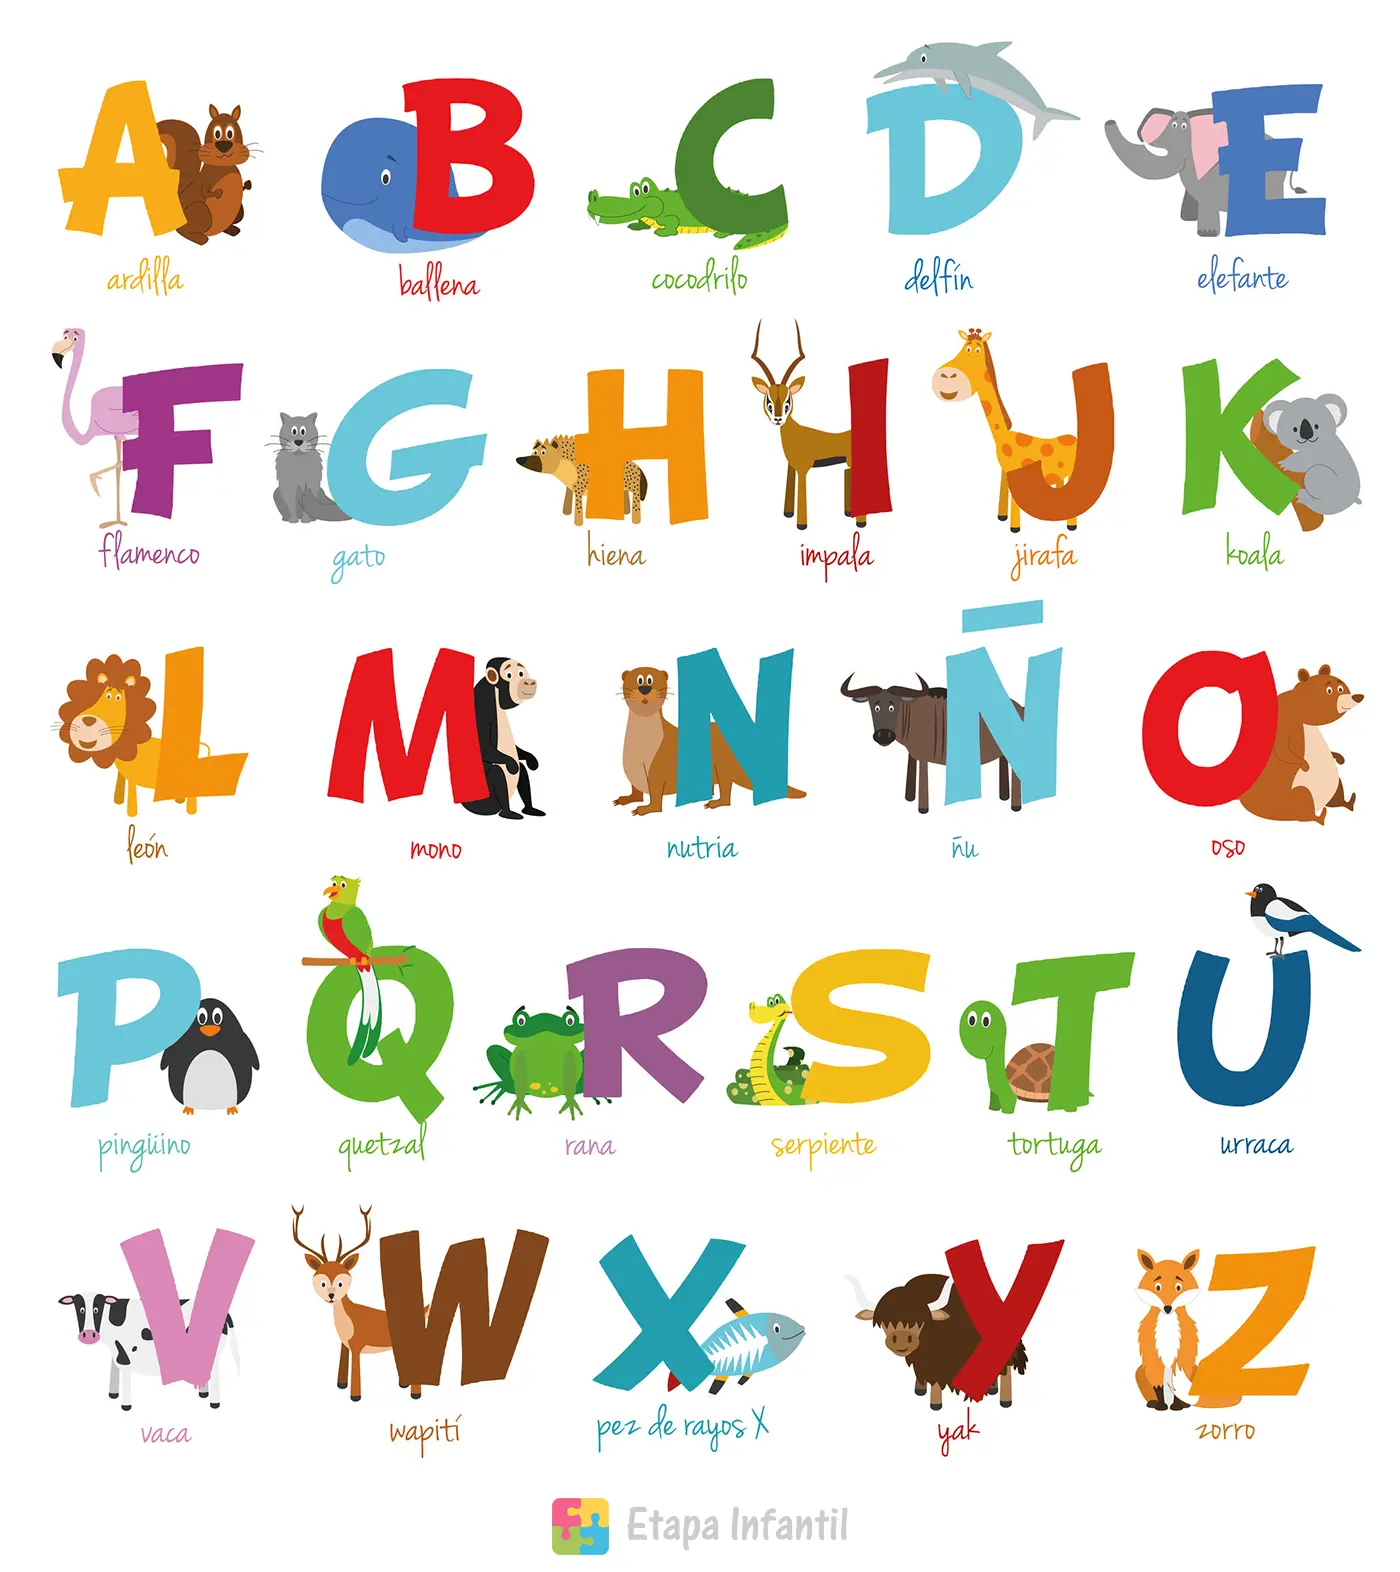 once Detener clima Enseñar de forma divertida el abecedario a un niño - Etapa Infantil